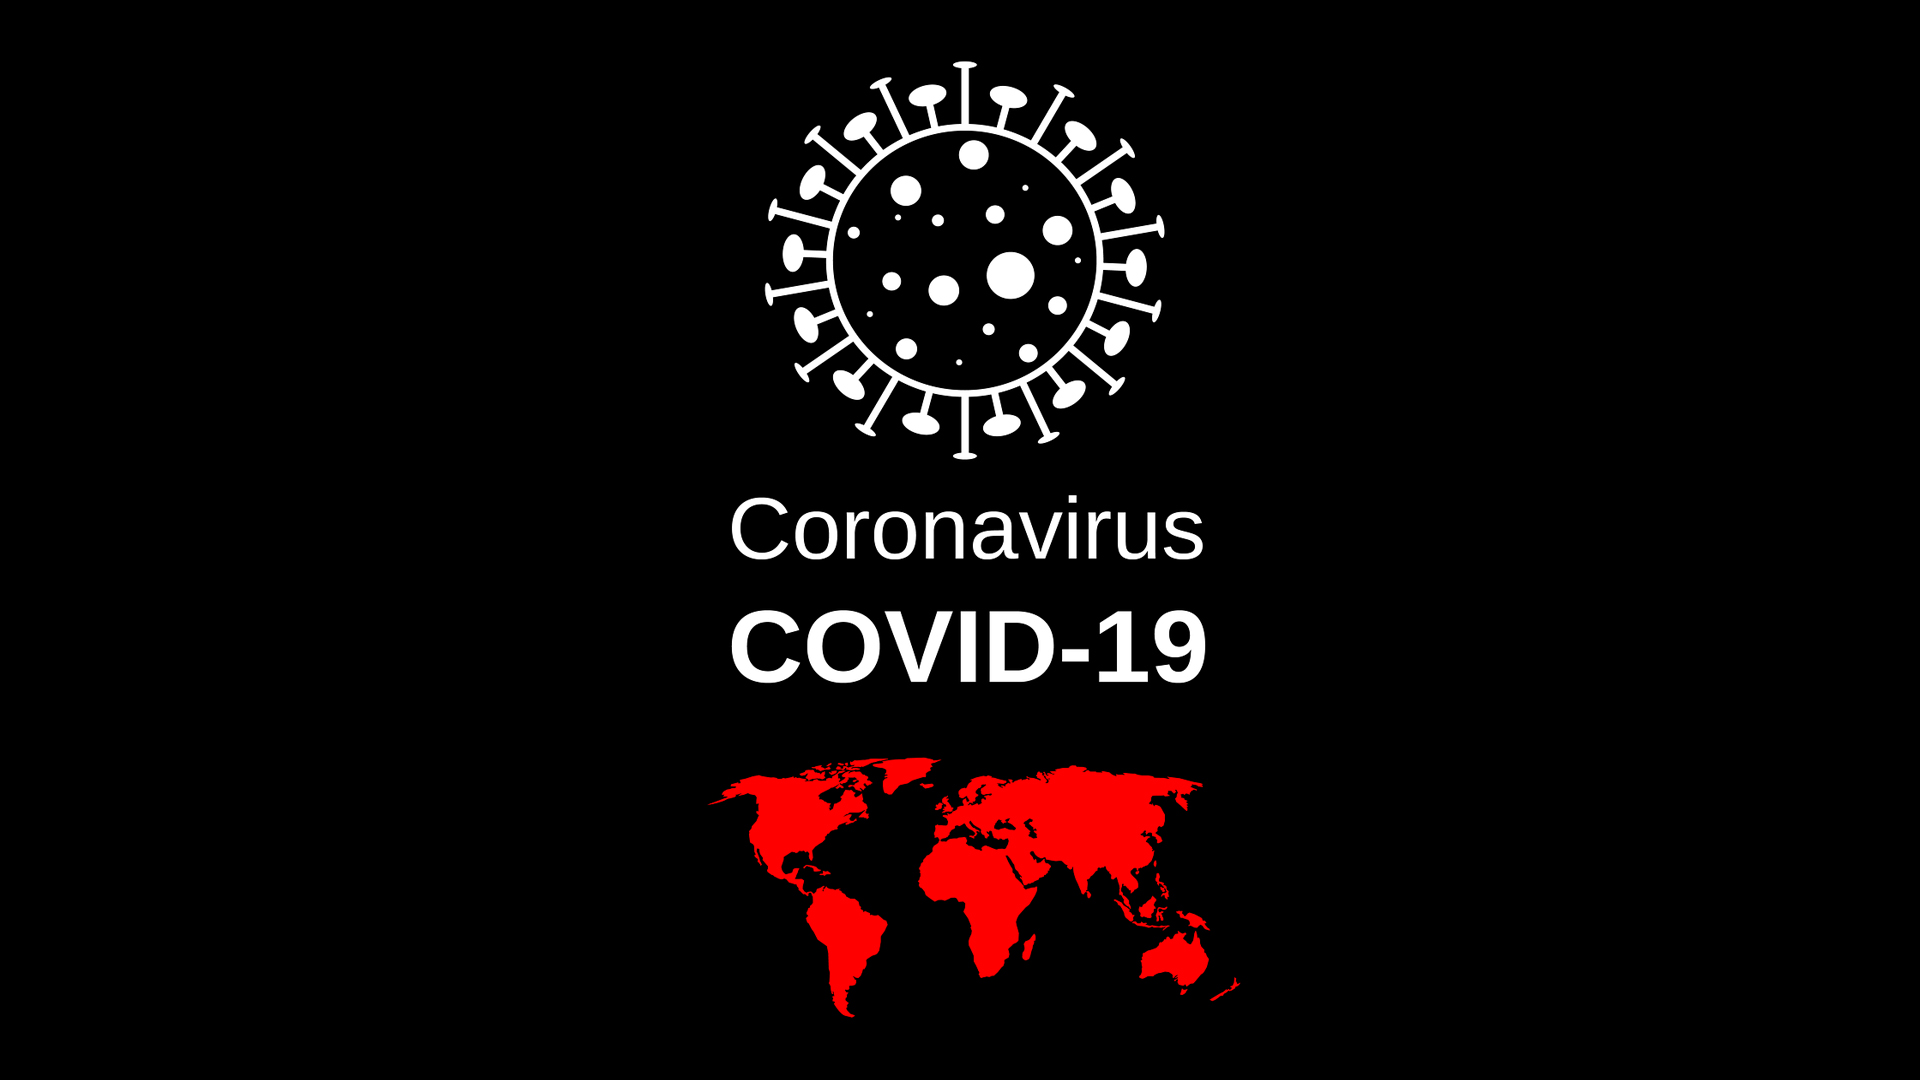 Coronavirus - Maps of the World